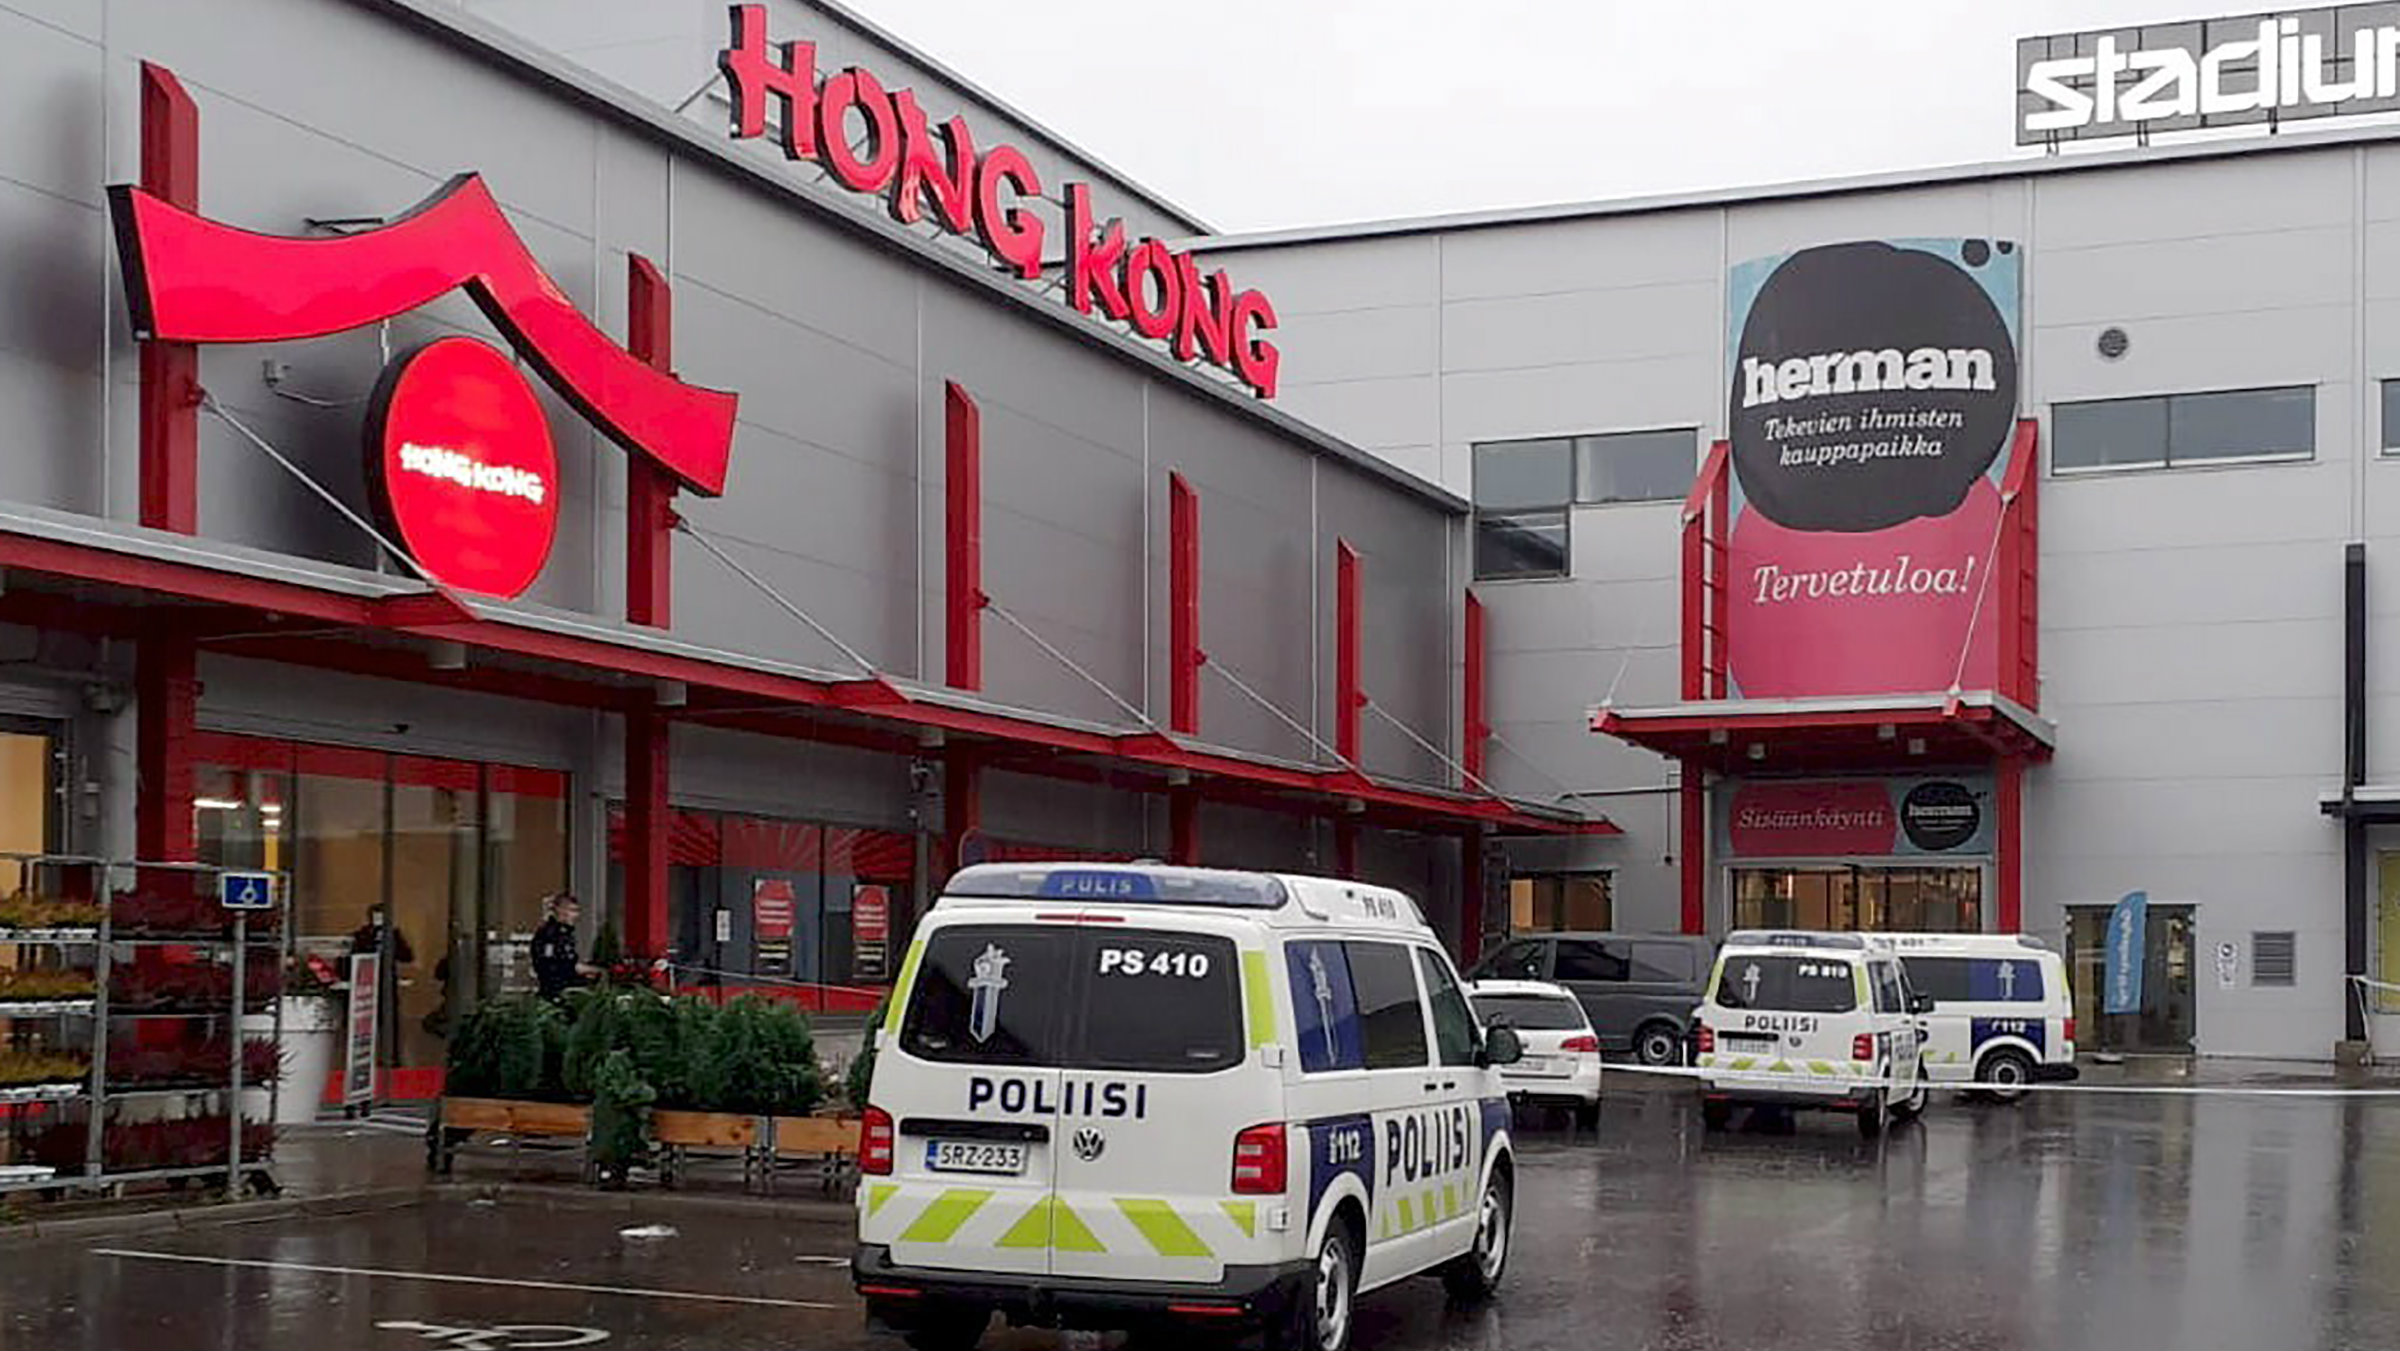 Finska: Jedna osoba ubijena, najmanje devet ranjeno u napadu u tržnom centru 1